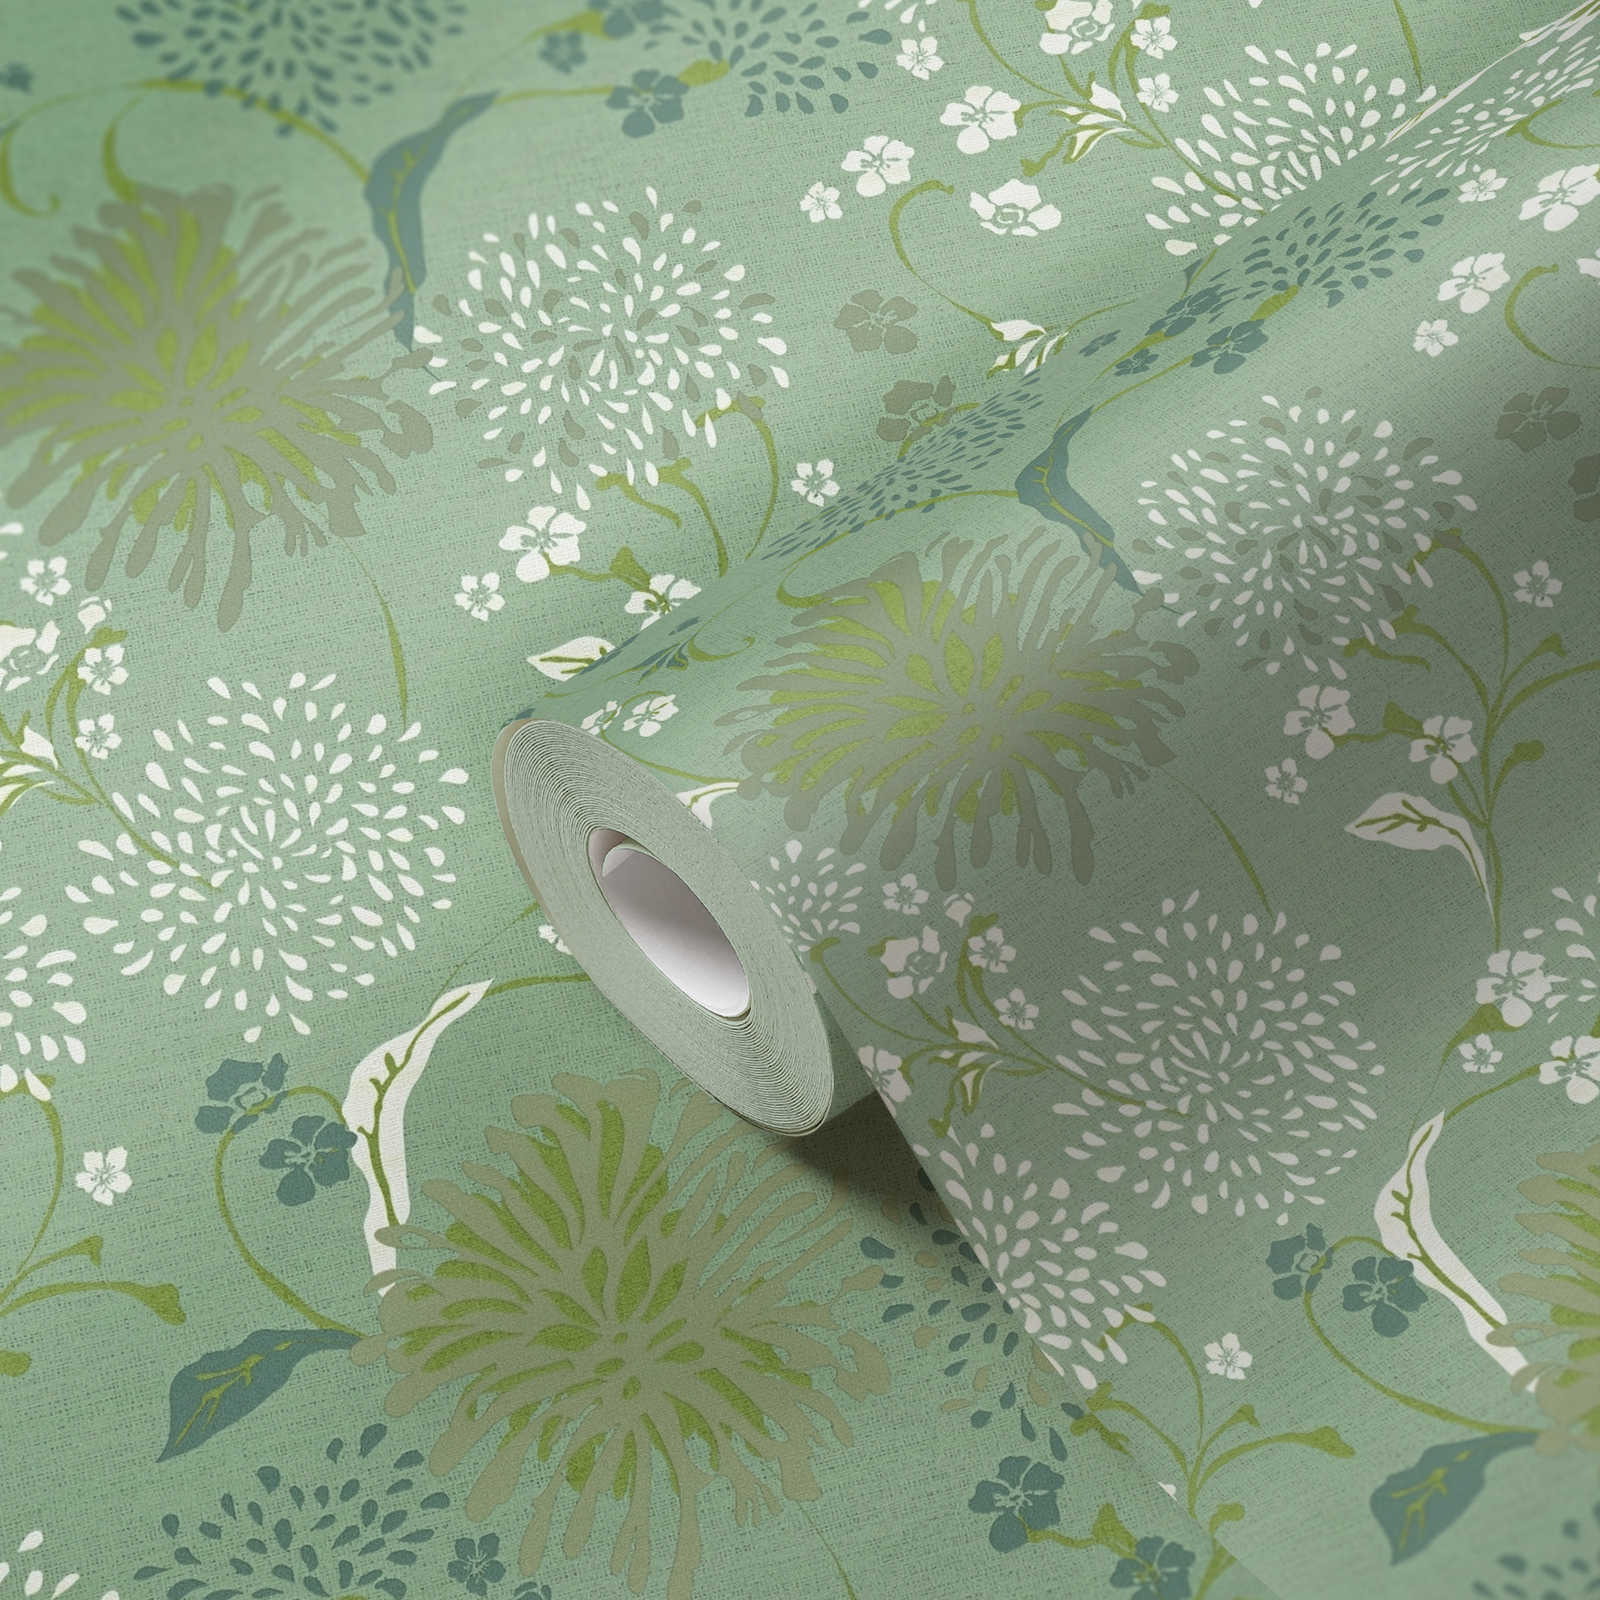             Papier peint intissé avec motif floral de pissenlits - vert, blanc
        